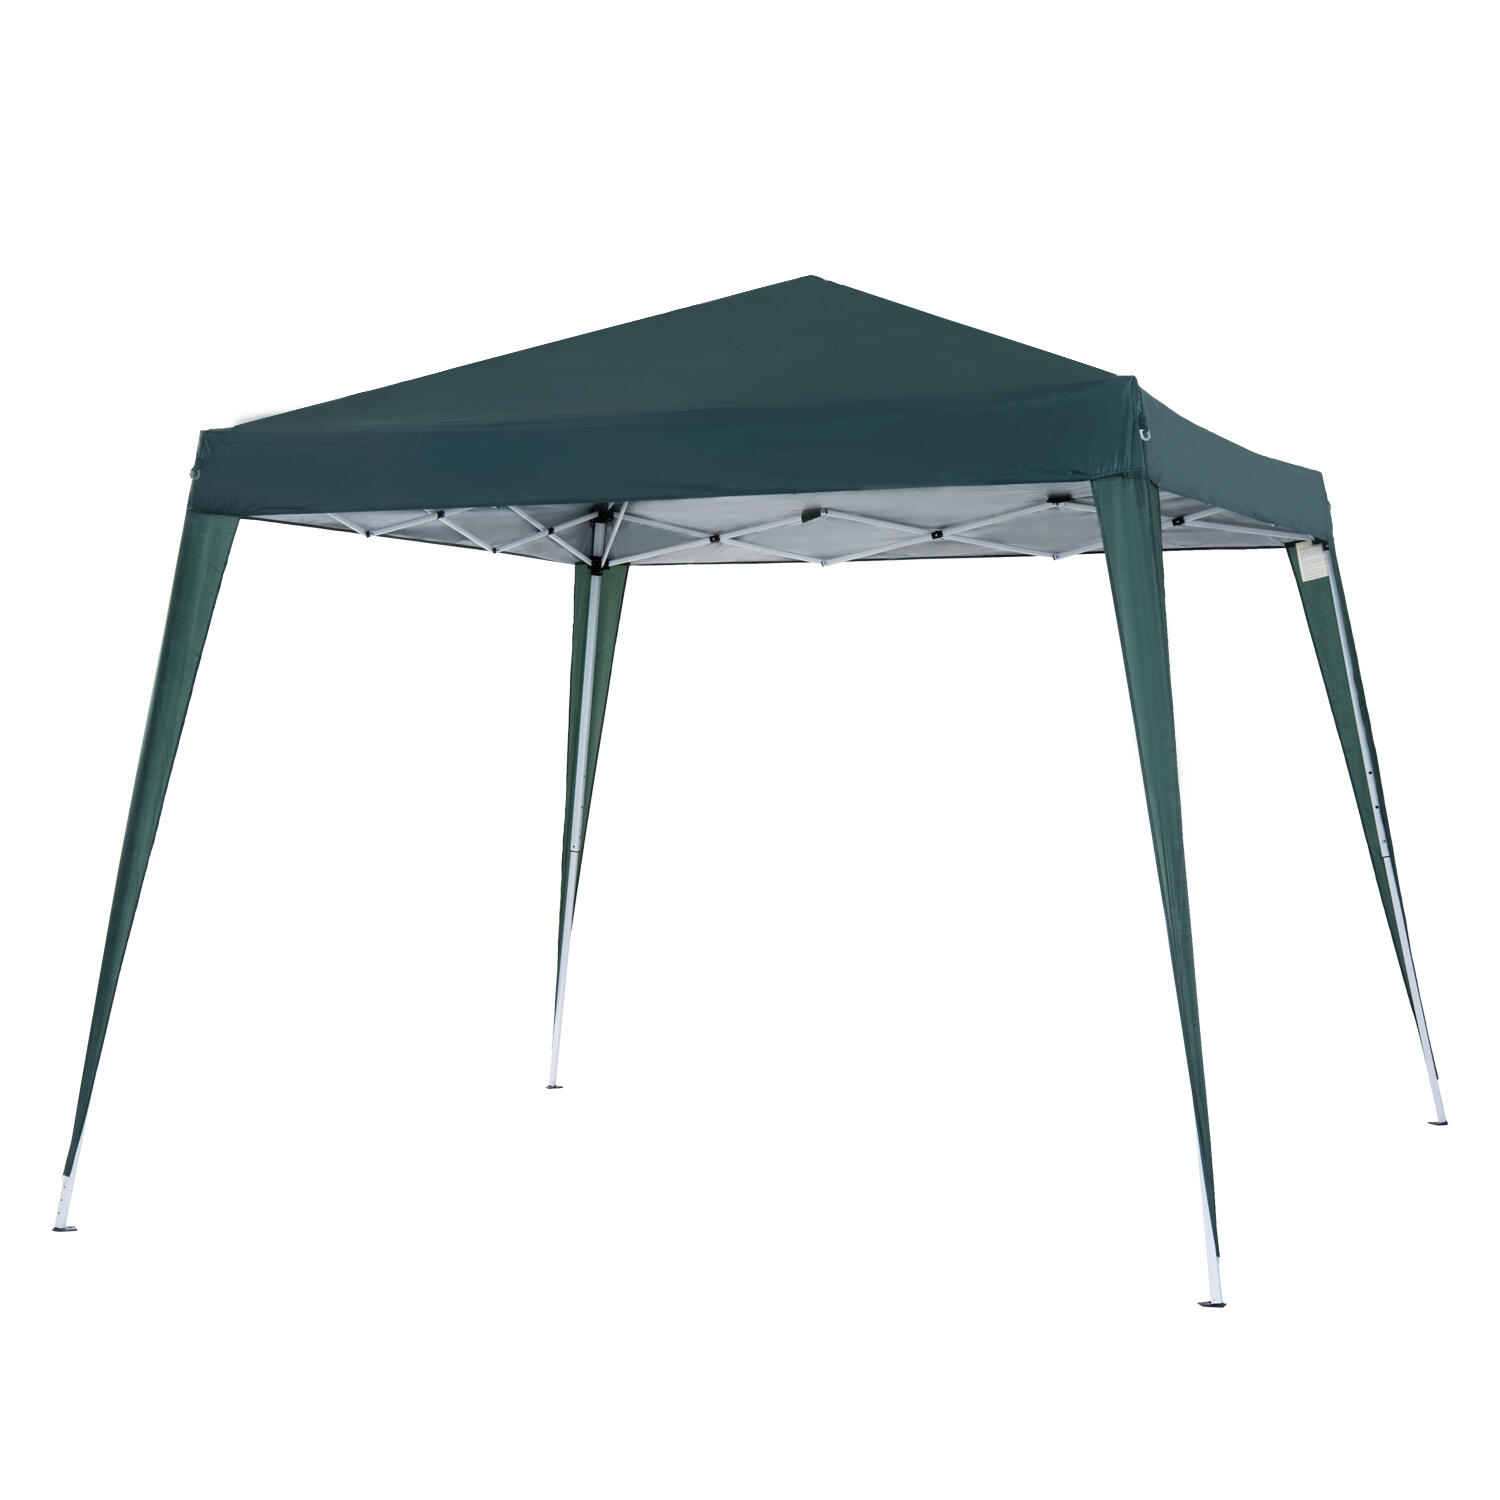 Triangolo Sun Shelter Protezione Parasole Outdoor Canopy Garden Patio Pool Ombra Vela Tenda Camping Picnic Tenda Colore: Army Green Dimensioni: 3x3x3m 